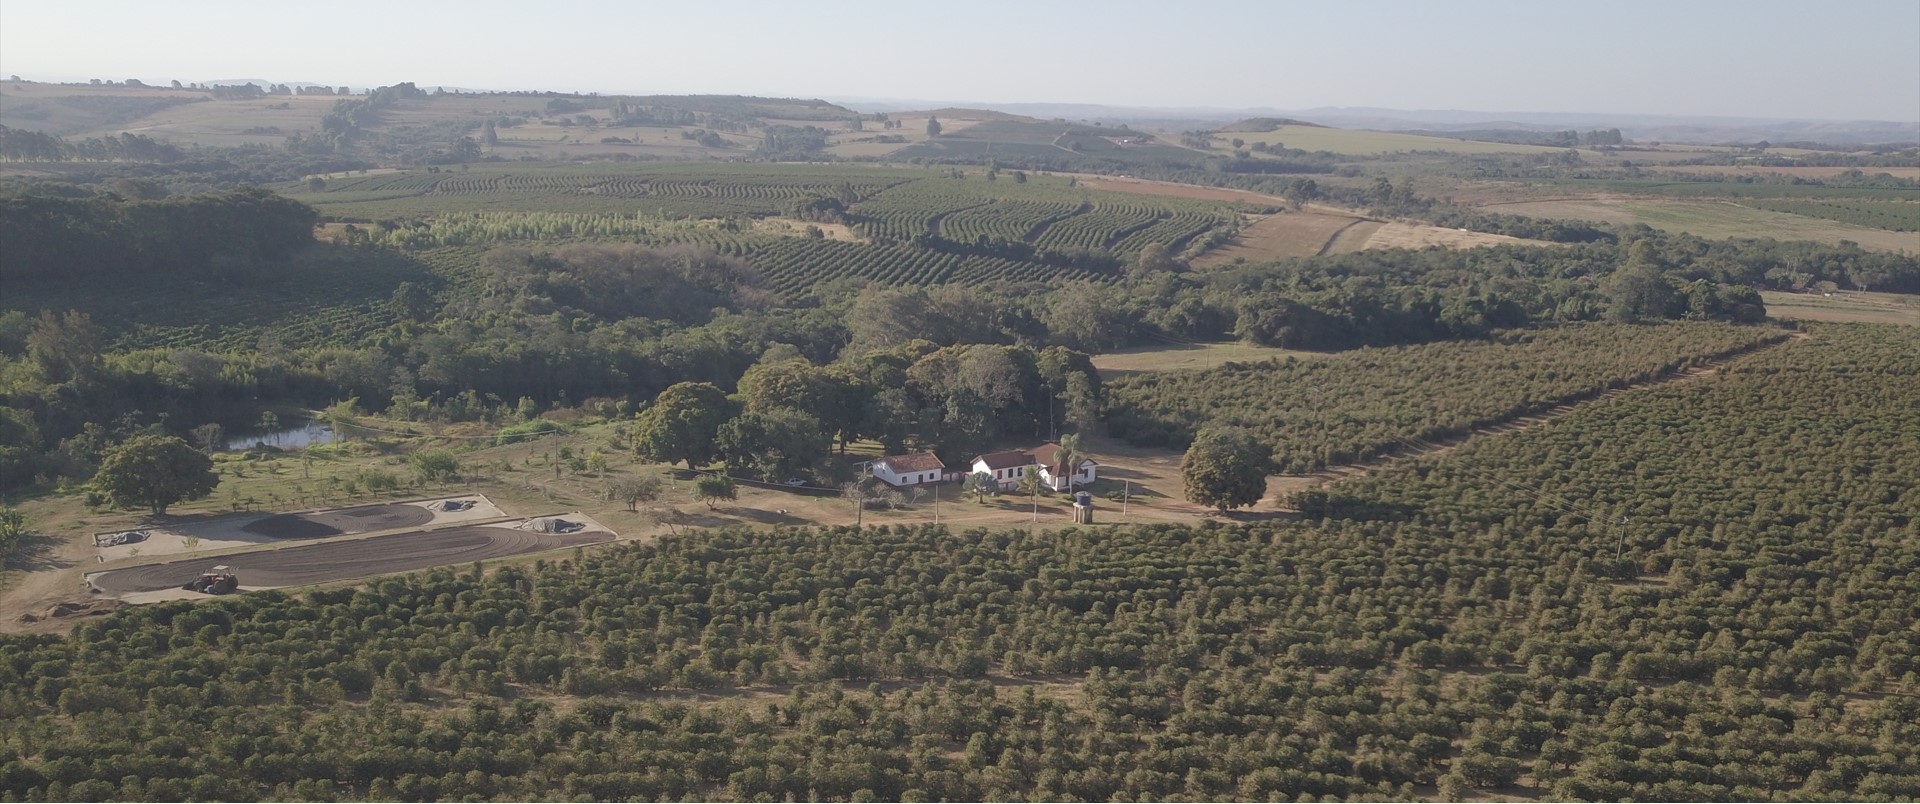 Cerrado Minerio Landscape